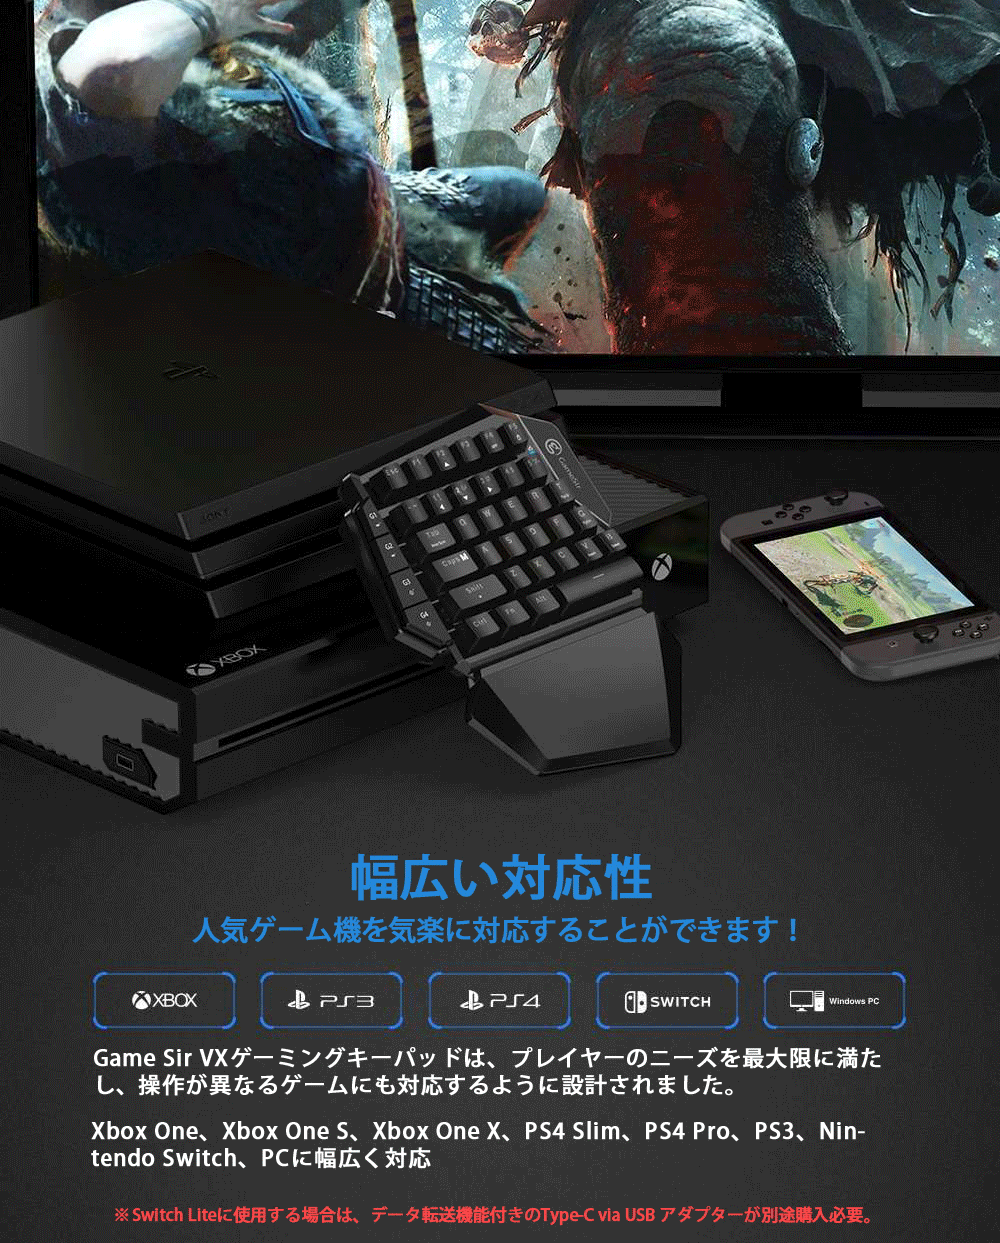 日本製 500円offクーポン 期間限定 フォートナイト Switch キーボード マウス ゲーミング ワイヤレスキーボード Gamesir Vx ゲーミングキーパッド スイッチ キーボード マウス Ps4 Ps3 Switch Switch Lite Xbox One Pc対応 ゲーム機用 日本語説明書 日本語版